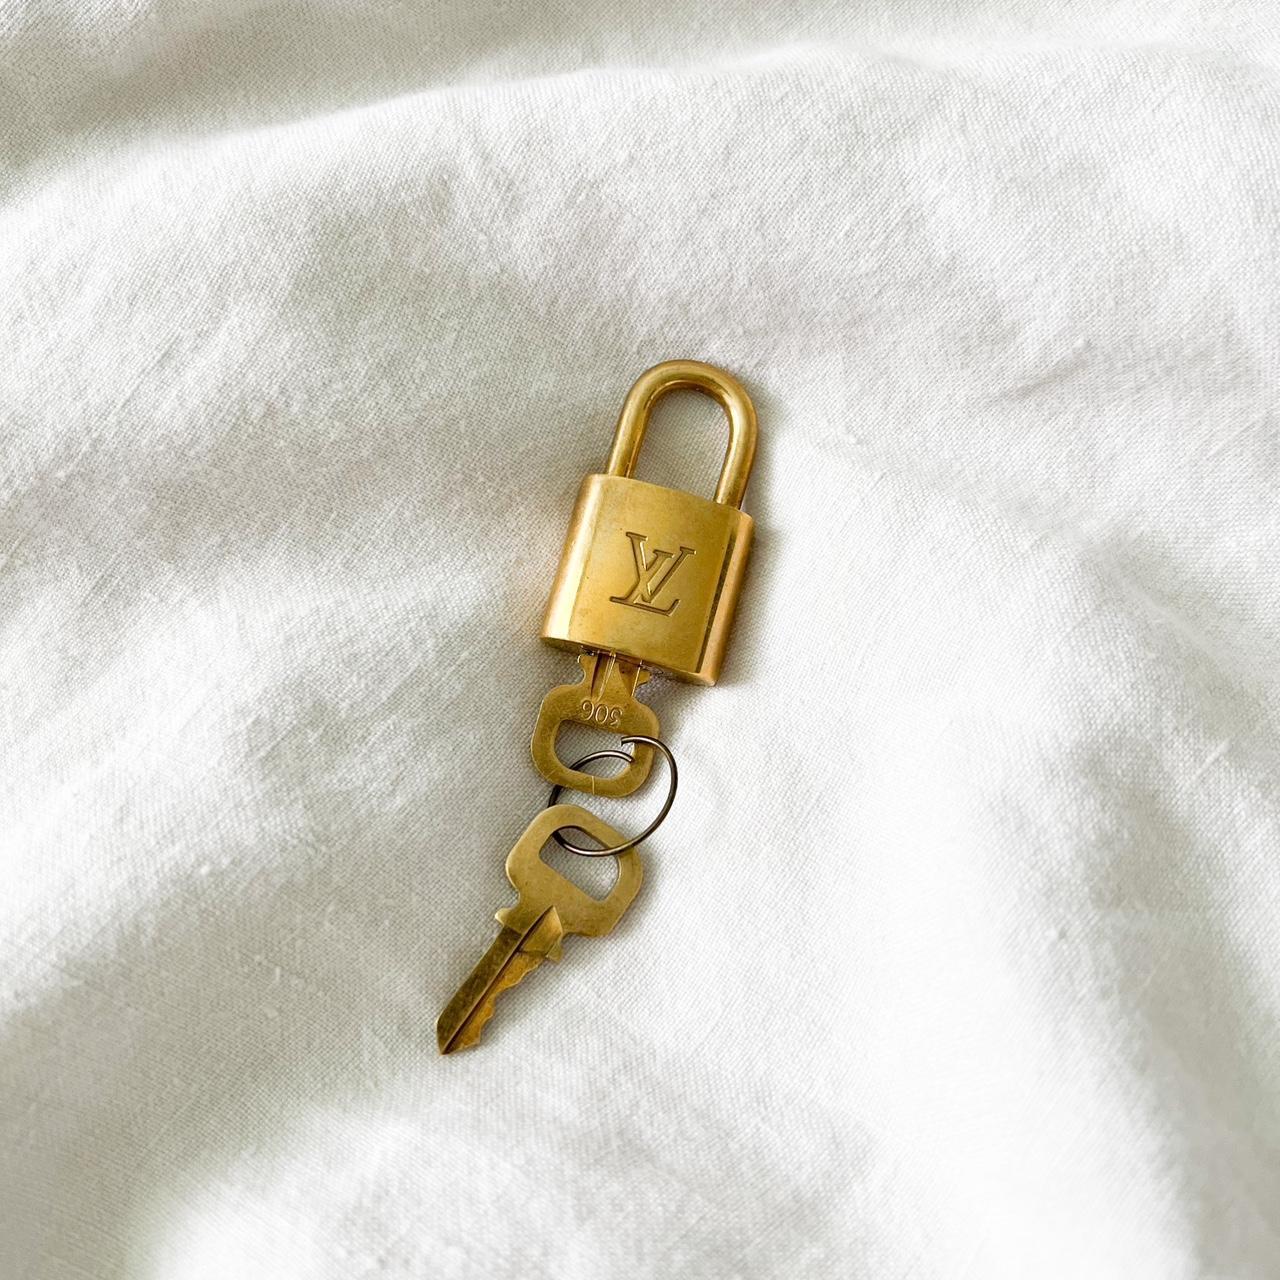 Authentic Louis Vuitton Lock & Key #305 in excellent - Depop